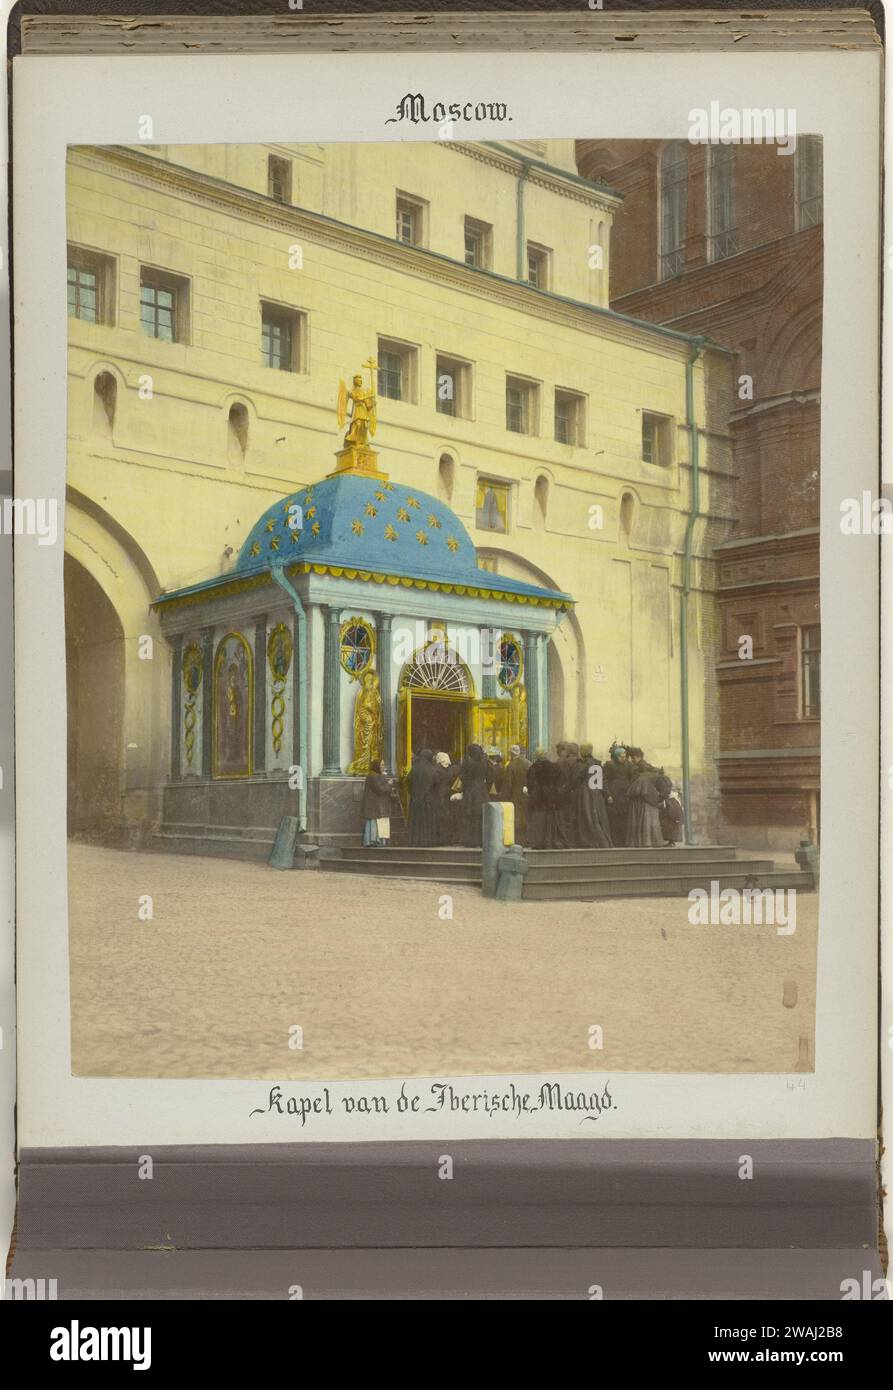 Auferstehungstor mit der Iveron-Kapelle in Moskau, 1898 Fotografien-Papier. Albumendruck mit Fotounterstützung Stockfoto